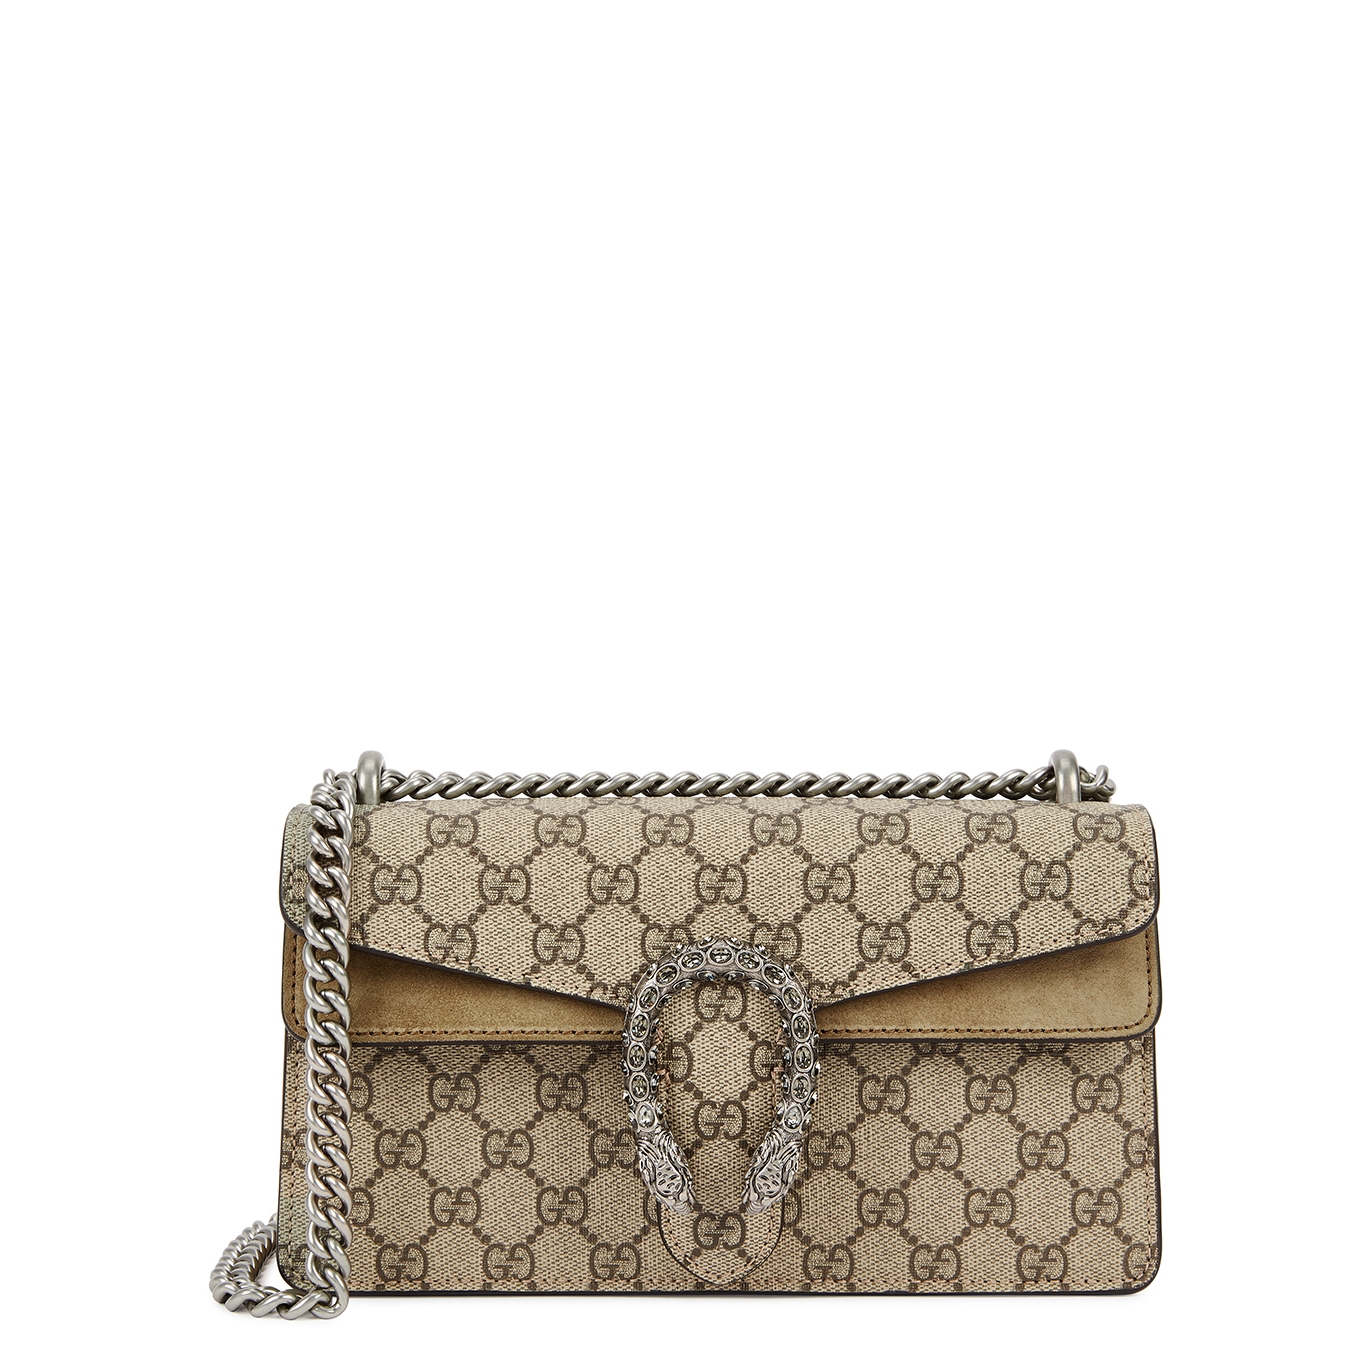 Gucci Dionysus GG Supreme Monogrammed Shoulder Bag - Beige